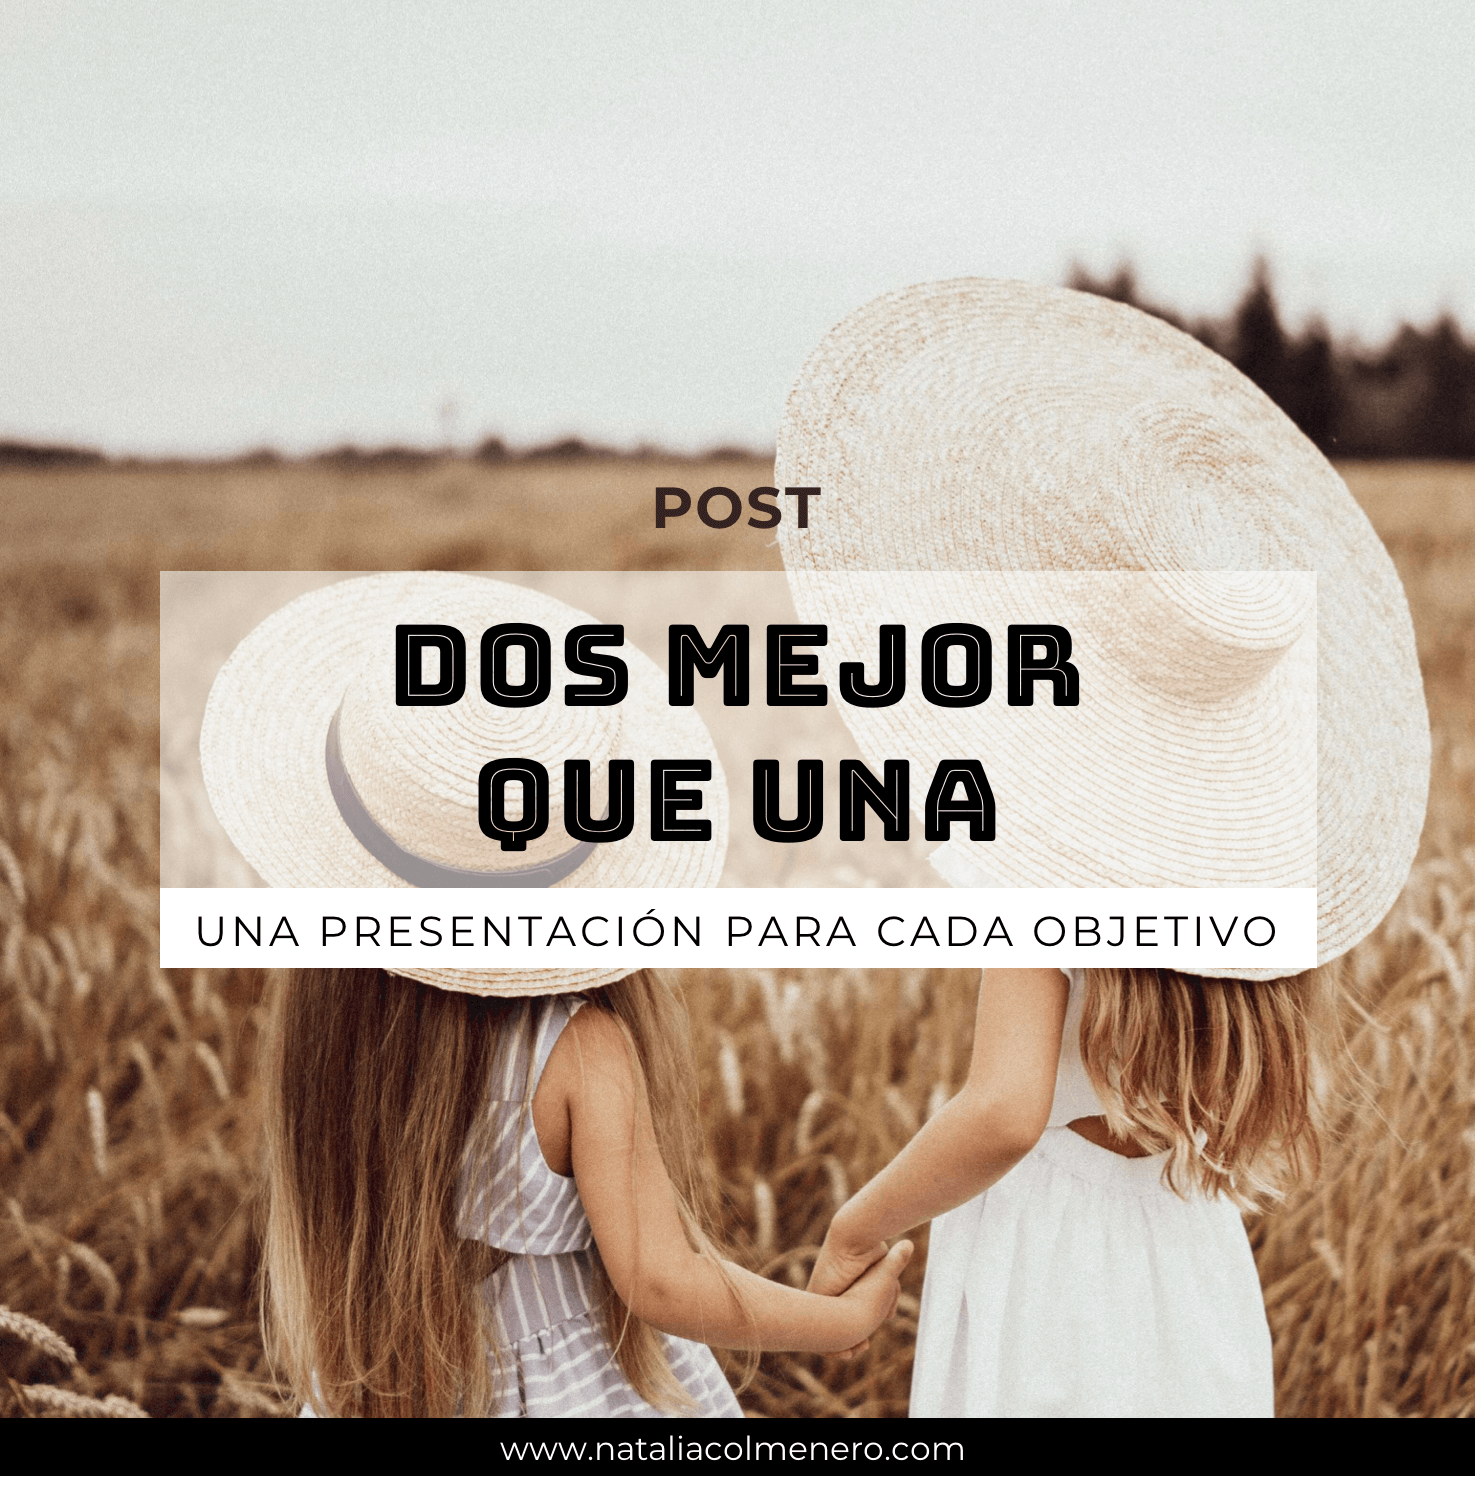 Post_dospresentacionesmejorqueuna by Natalia Colmenero